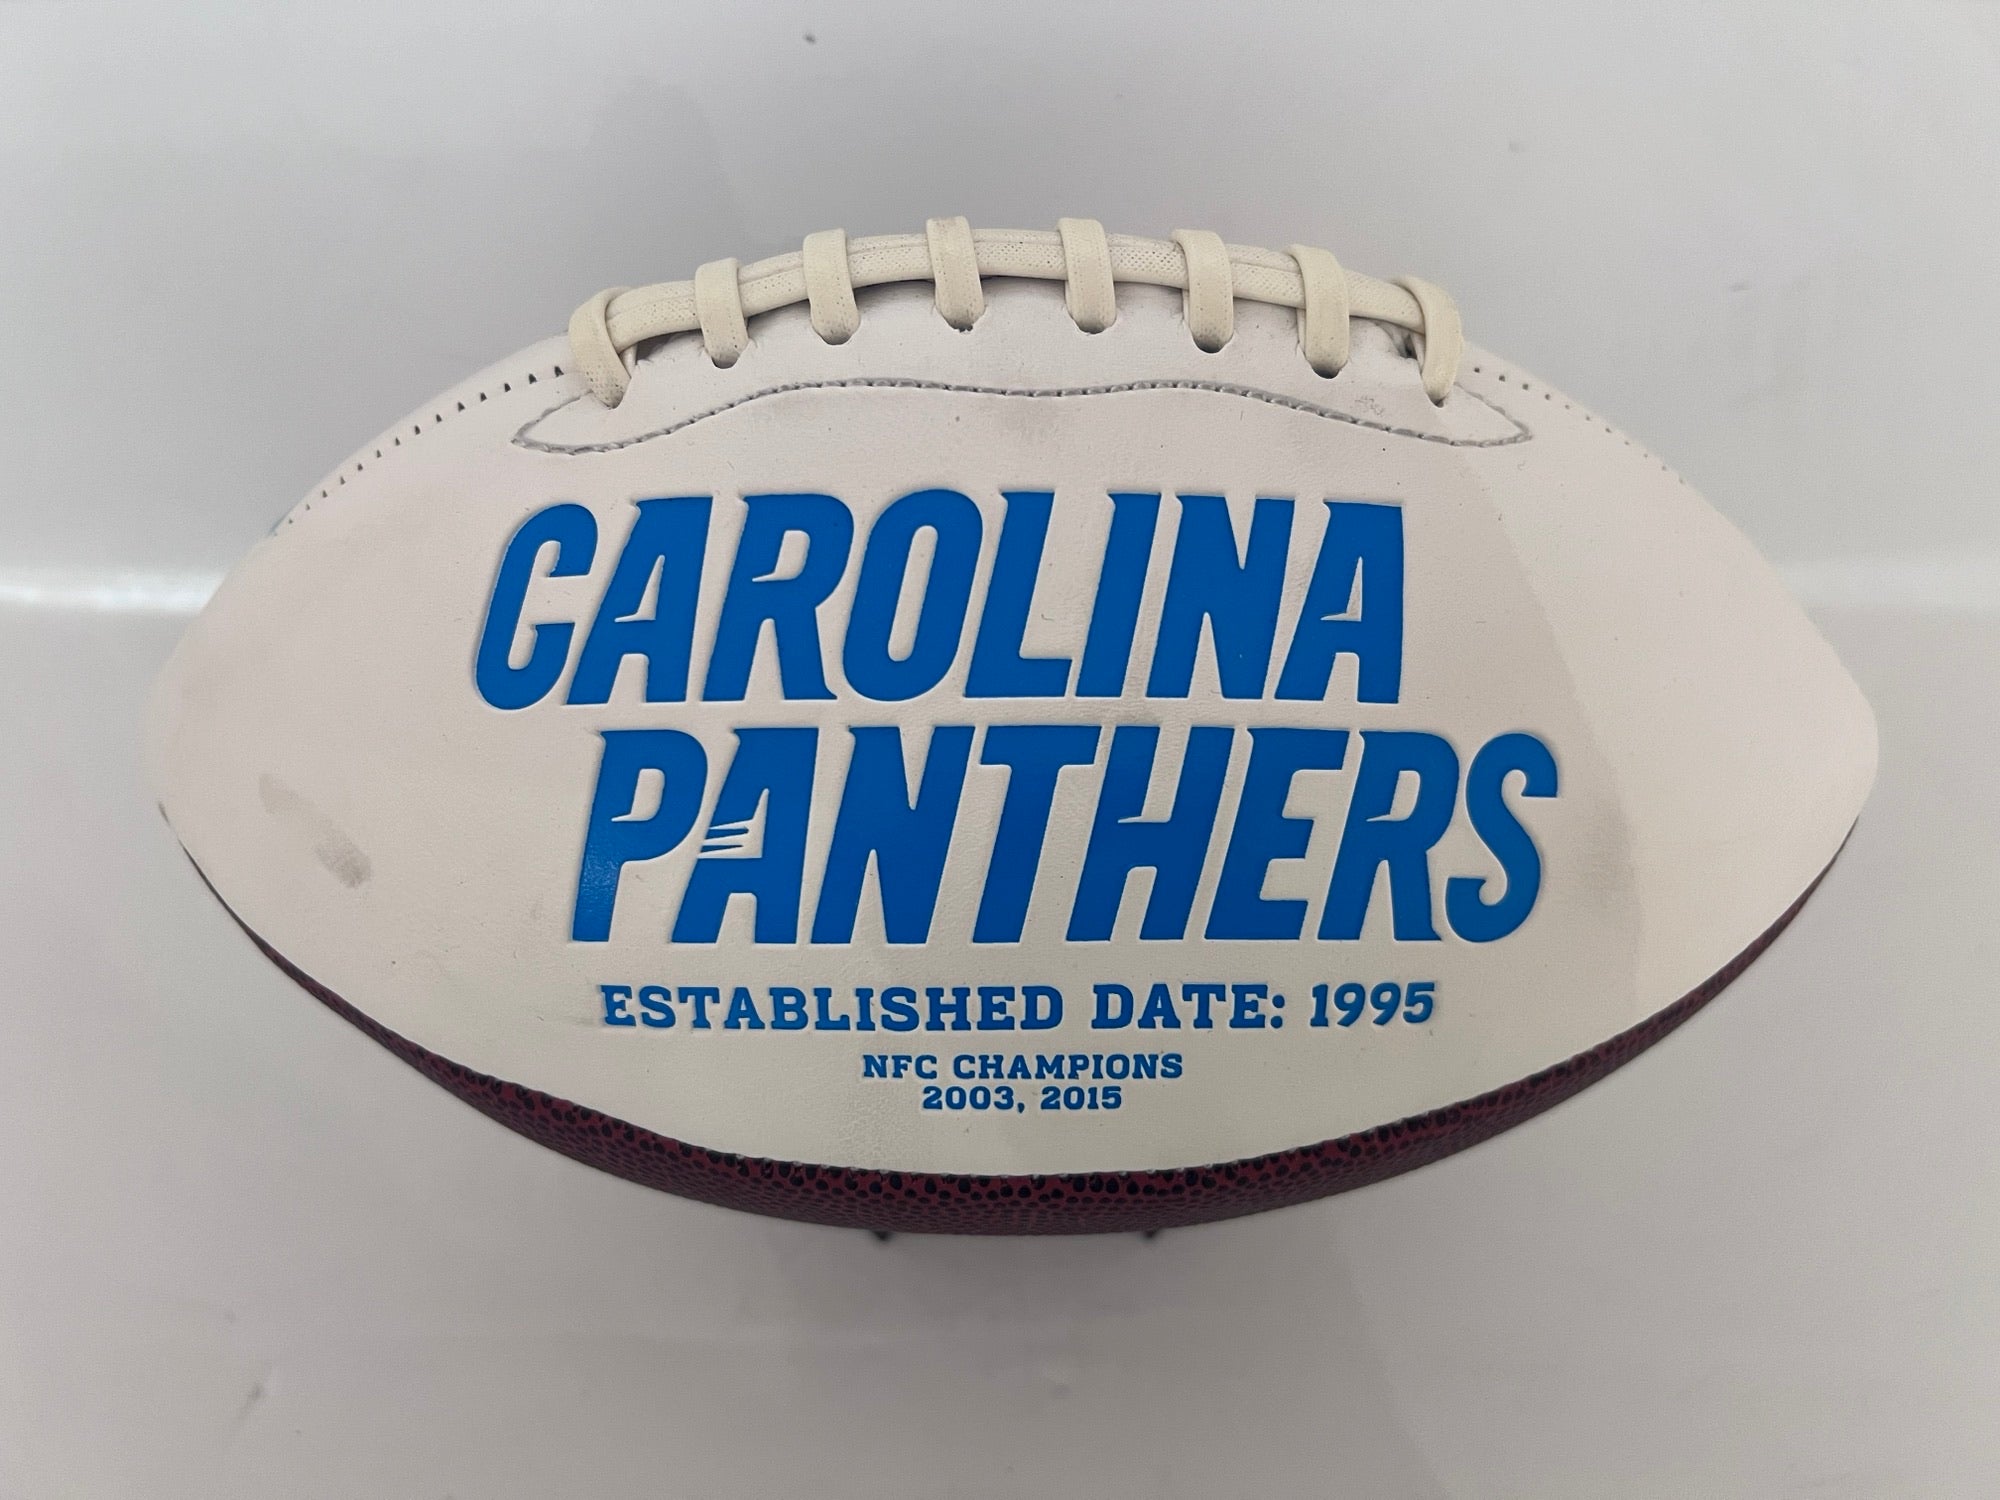 Carolina Panthers full size football Cam Newton, Greg Olsen signed